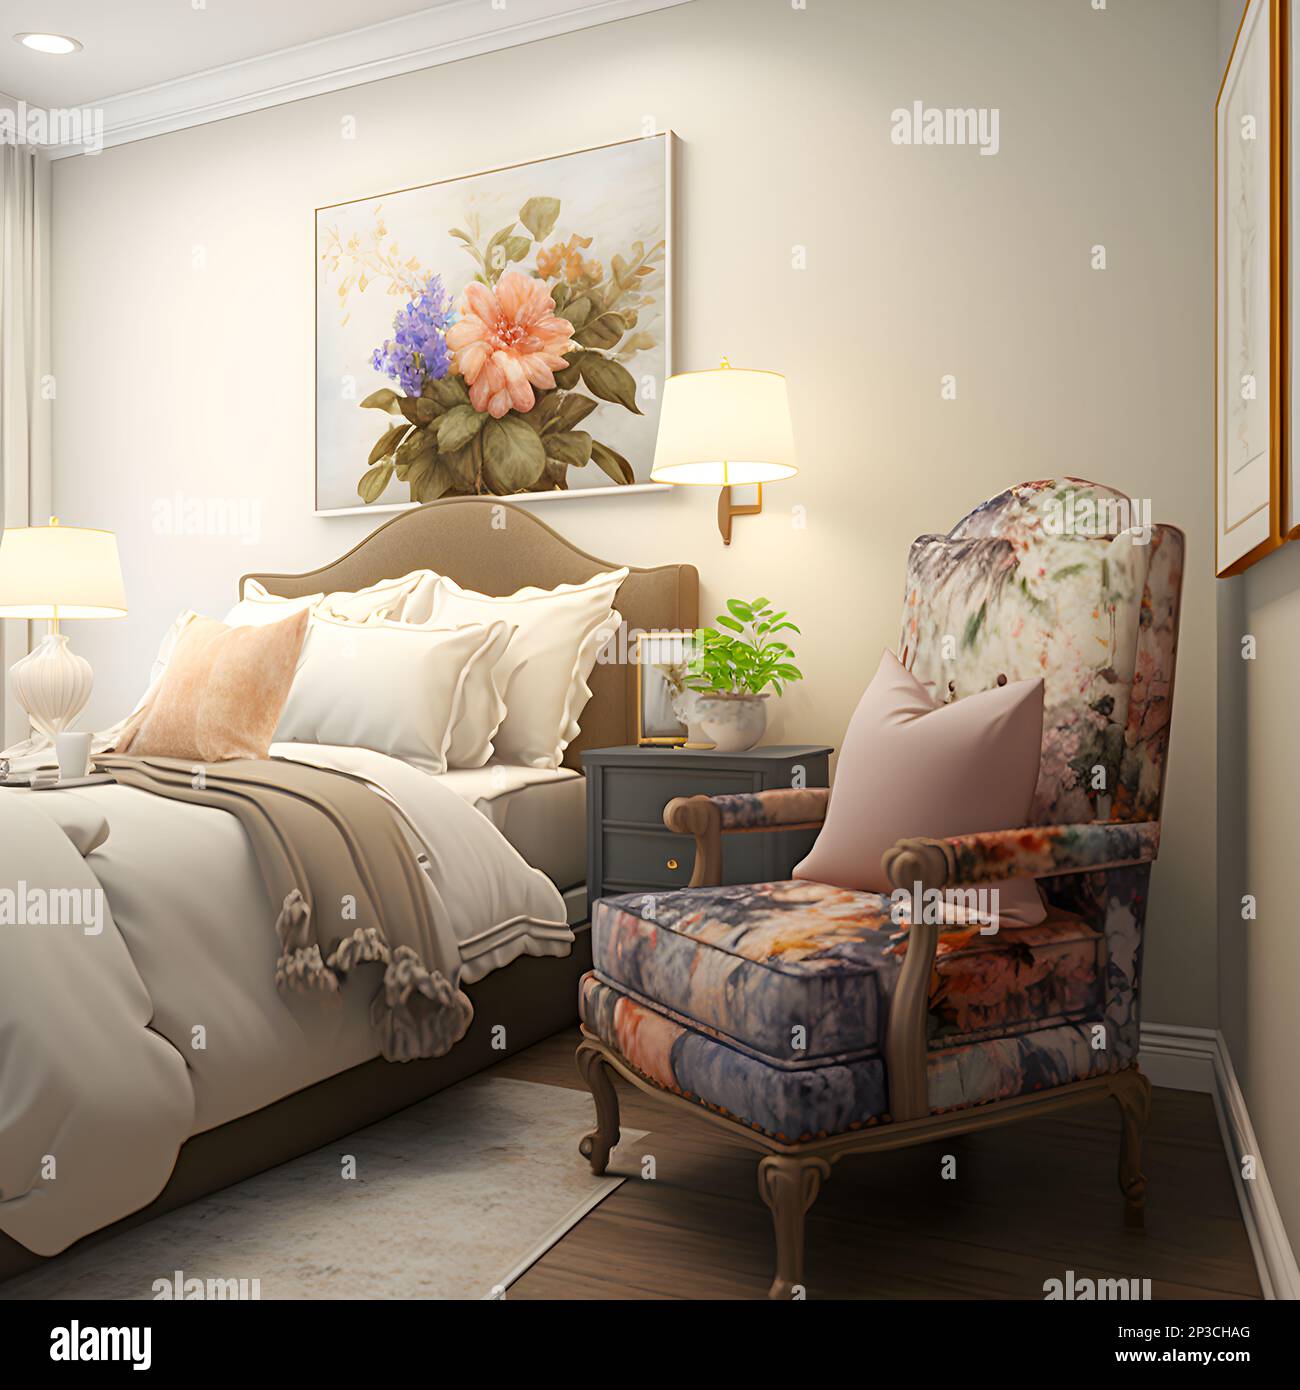 Una cama hecha con sábanas y mantas en una habitación de hotel con pintura  en la pared, una cabecera con lámparas de lectura y flores junto a un  sillón con almohada Fotografía